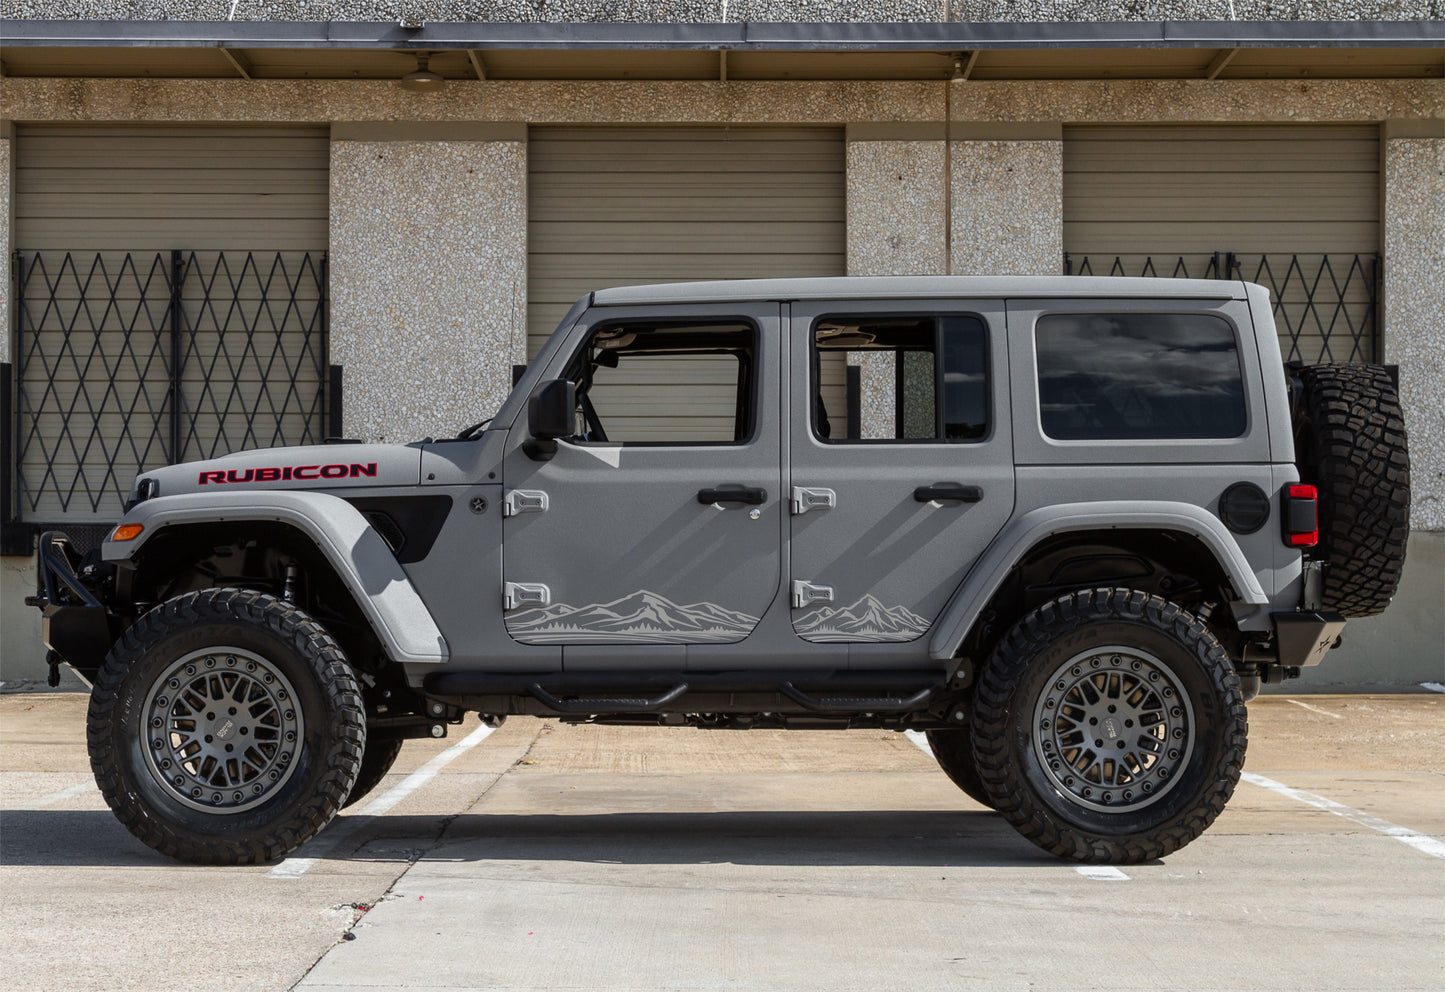 Mountain Silhouette Decals Fits Jeep Wrangler JK, JL 4-door & Jeep Gladiator 